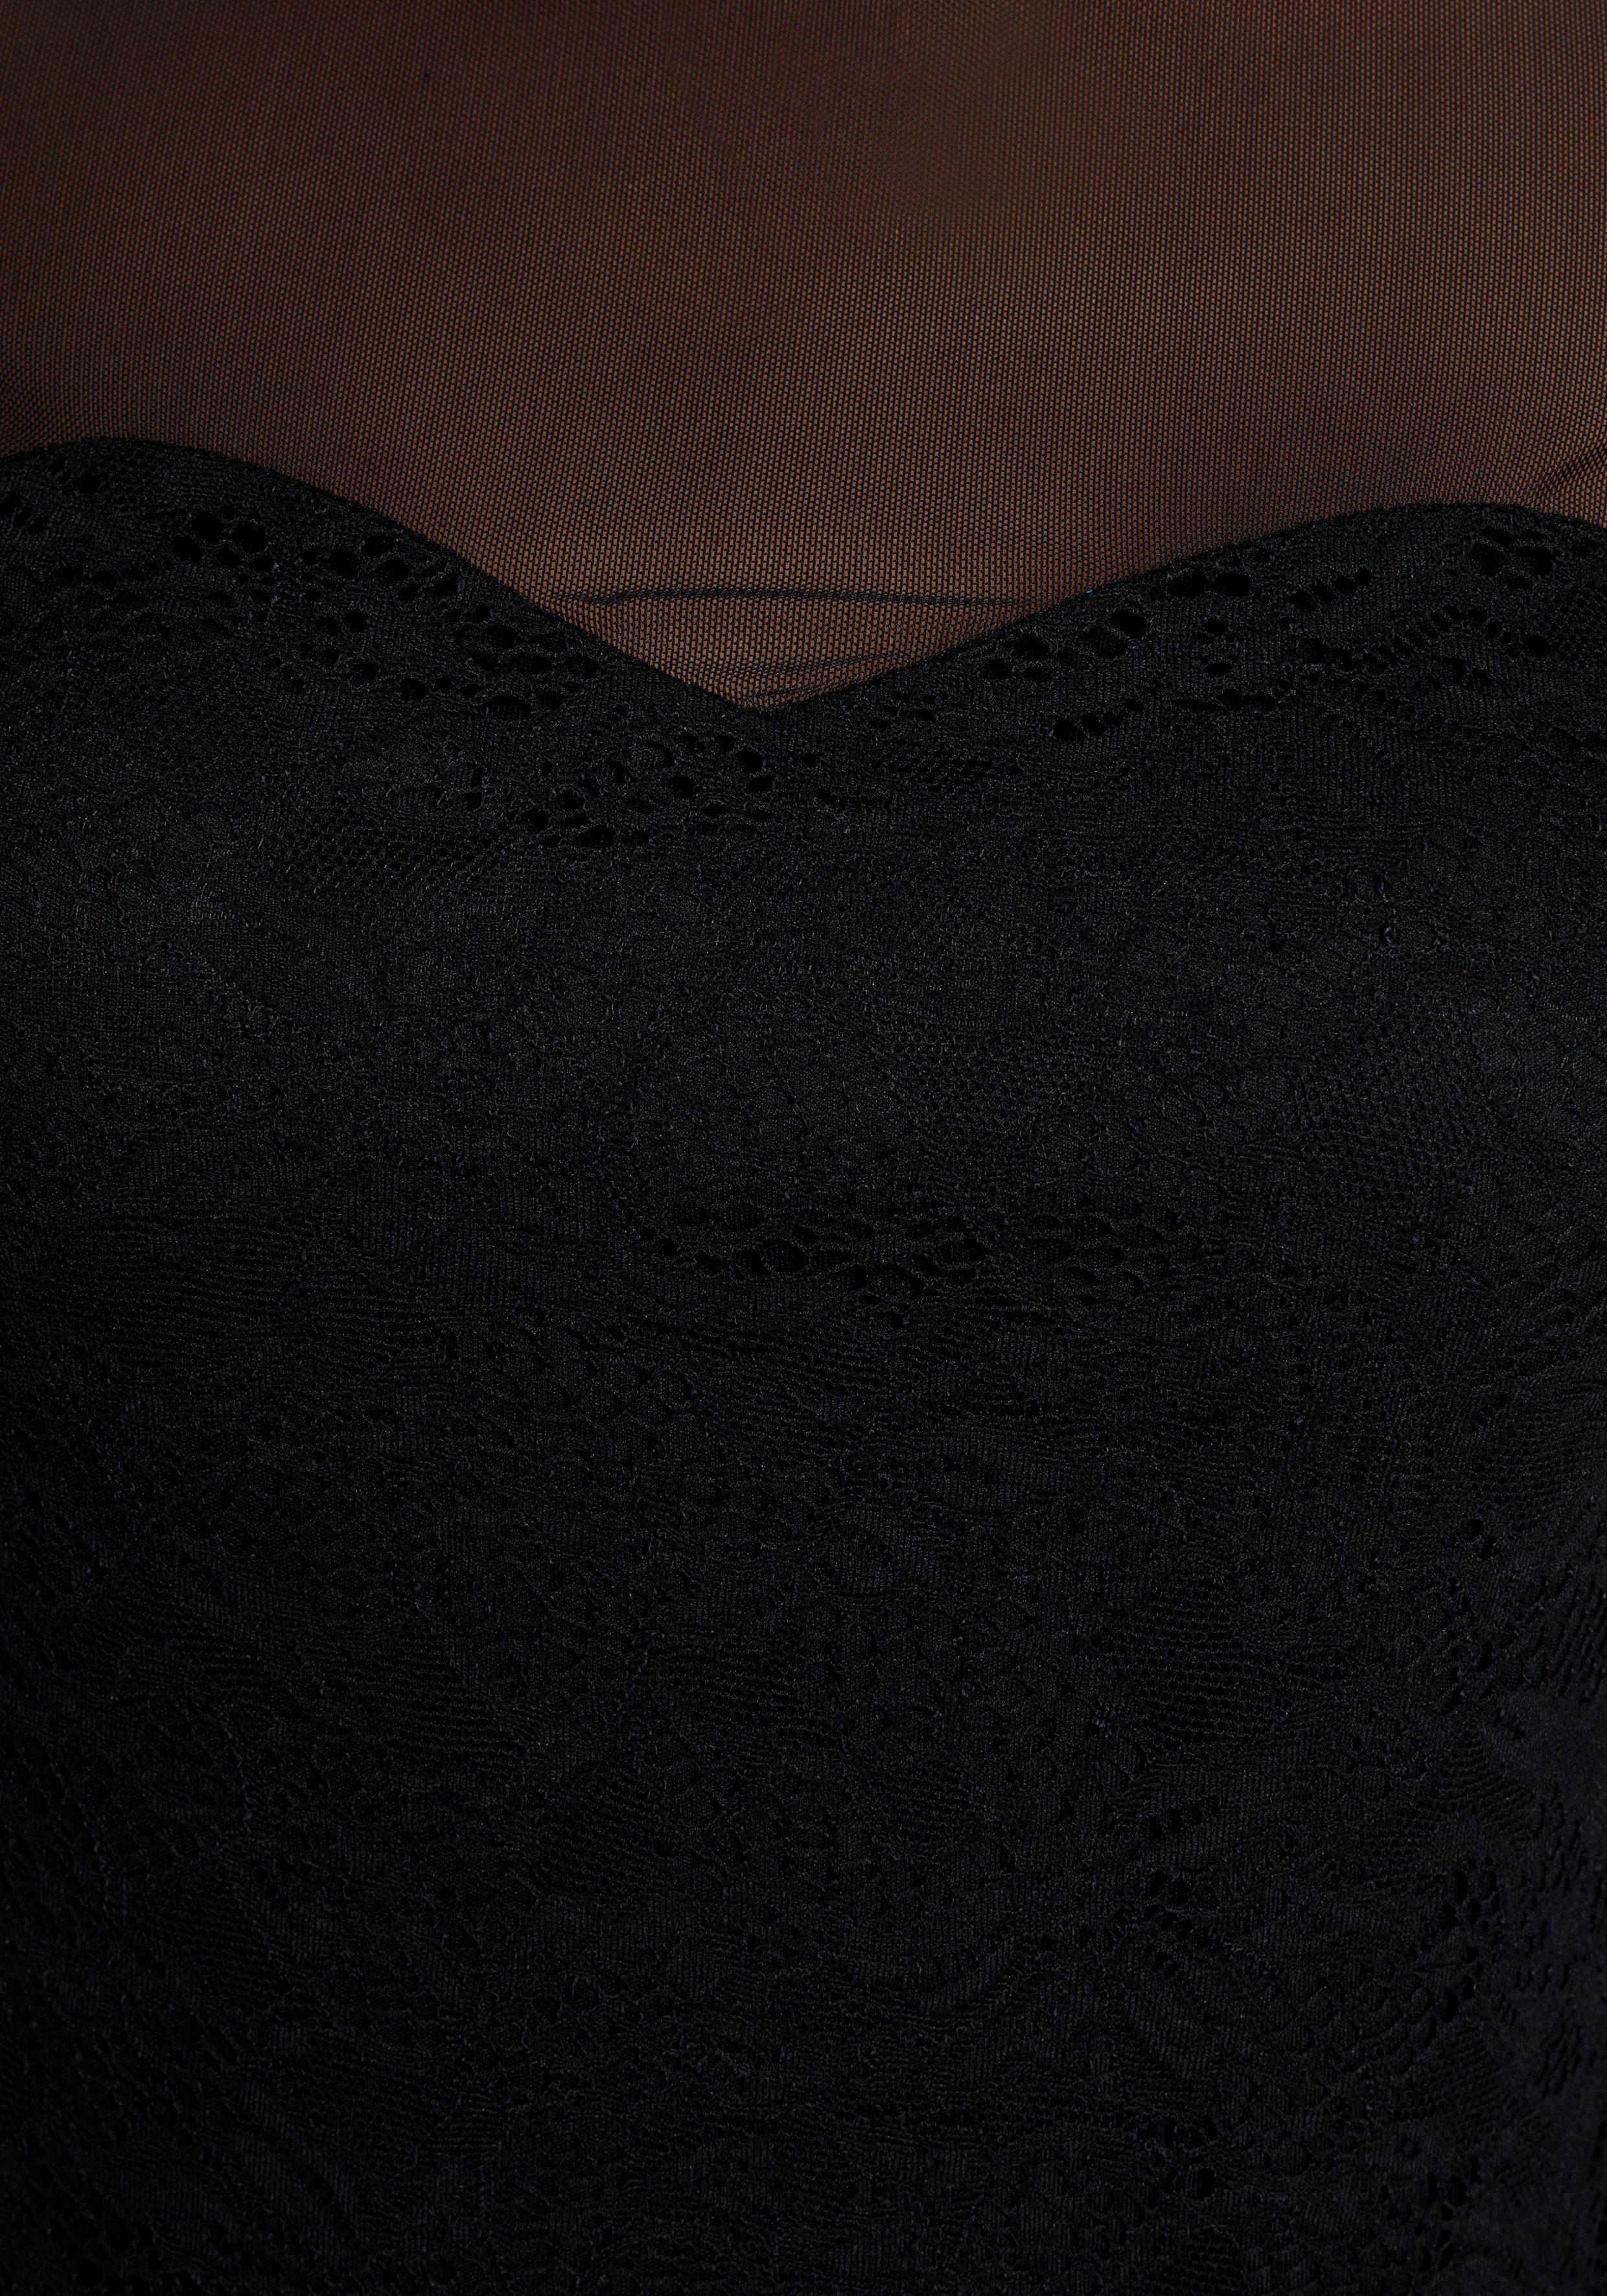 Melrose Shirt met lange mouwen met elegante mesh nieuwe collectie